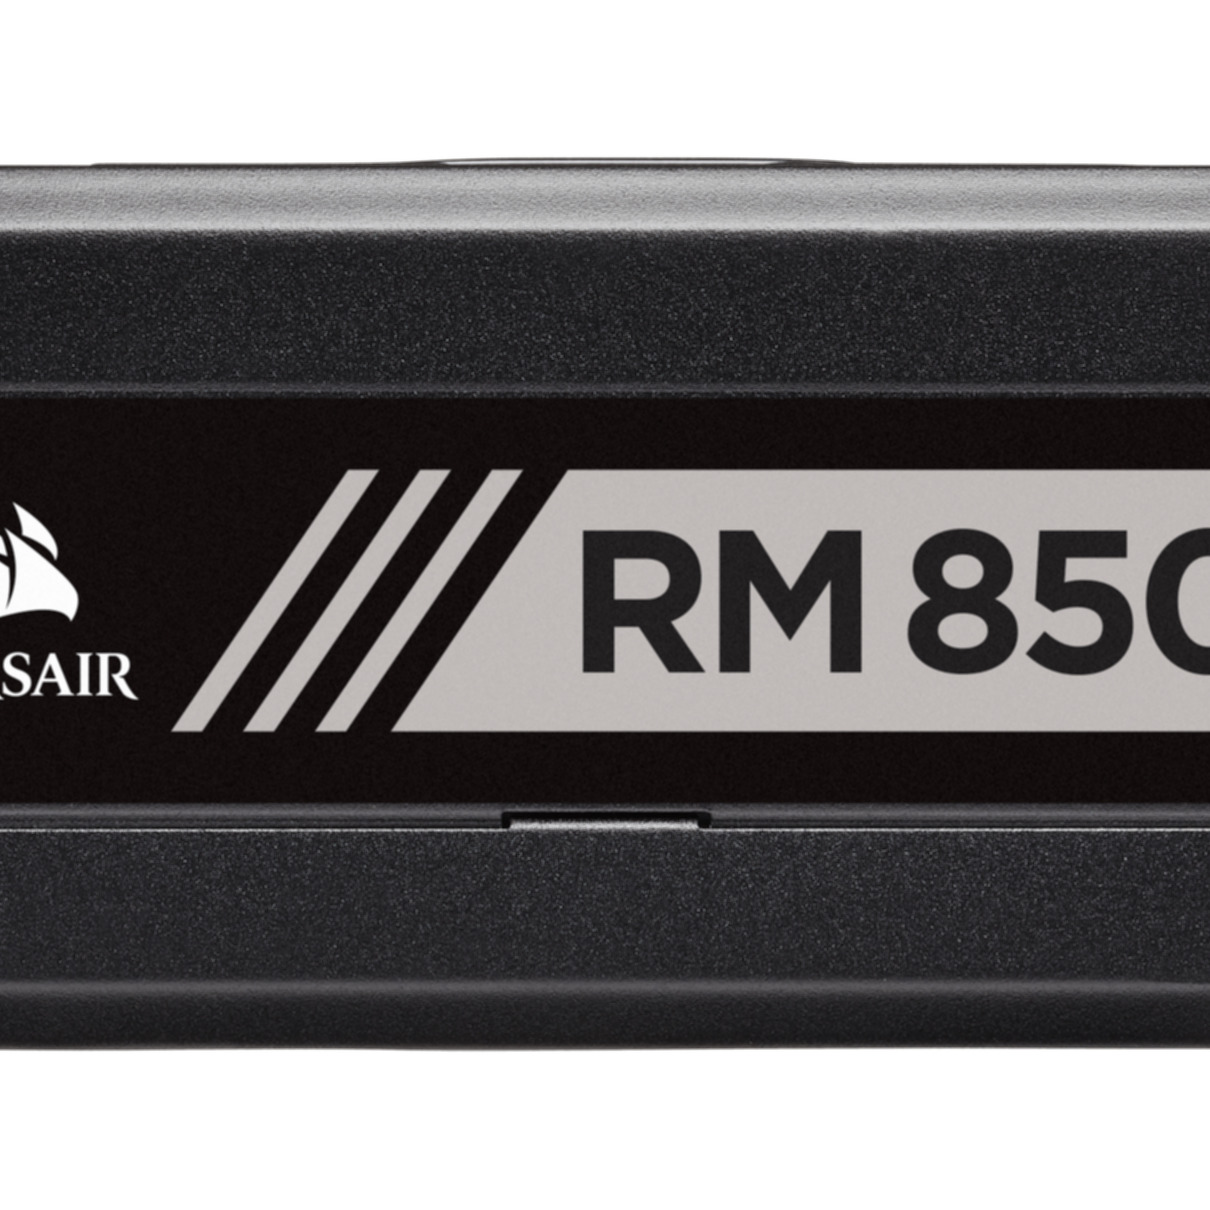 CORSAIR RM850x PC 850 Watt Netzteil